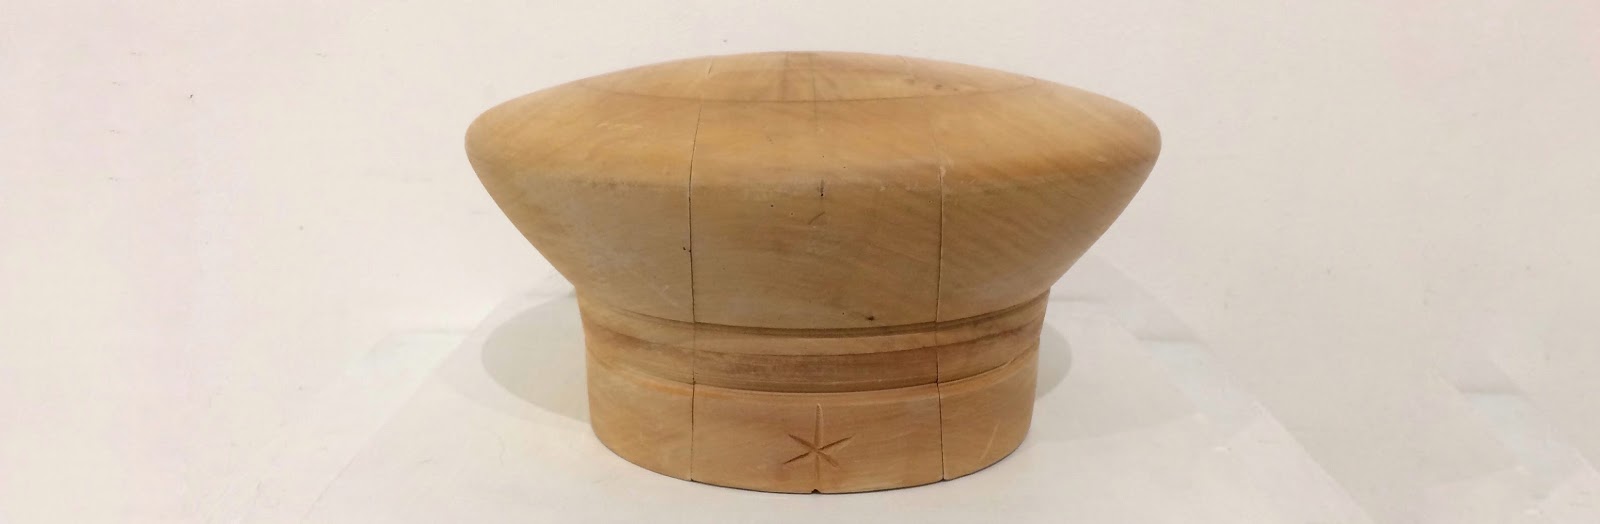 IIC paris 帽子の木型